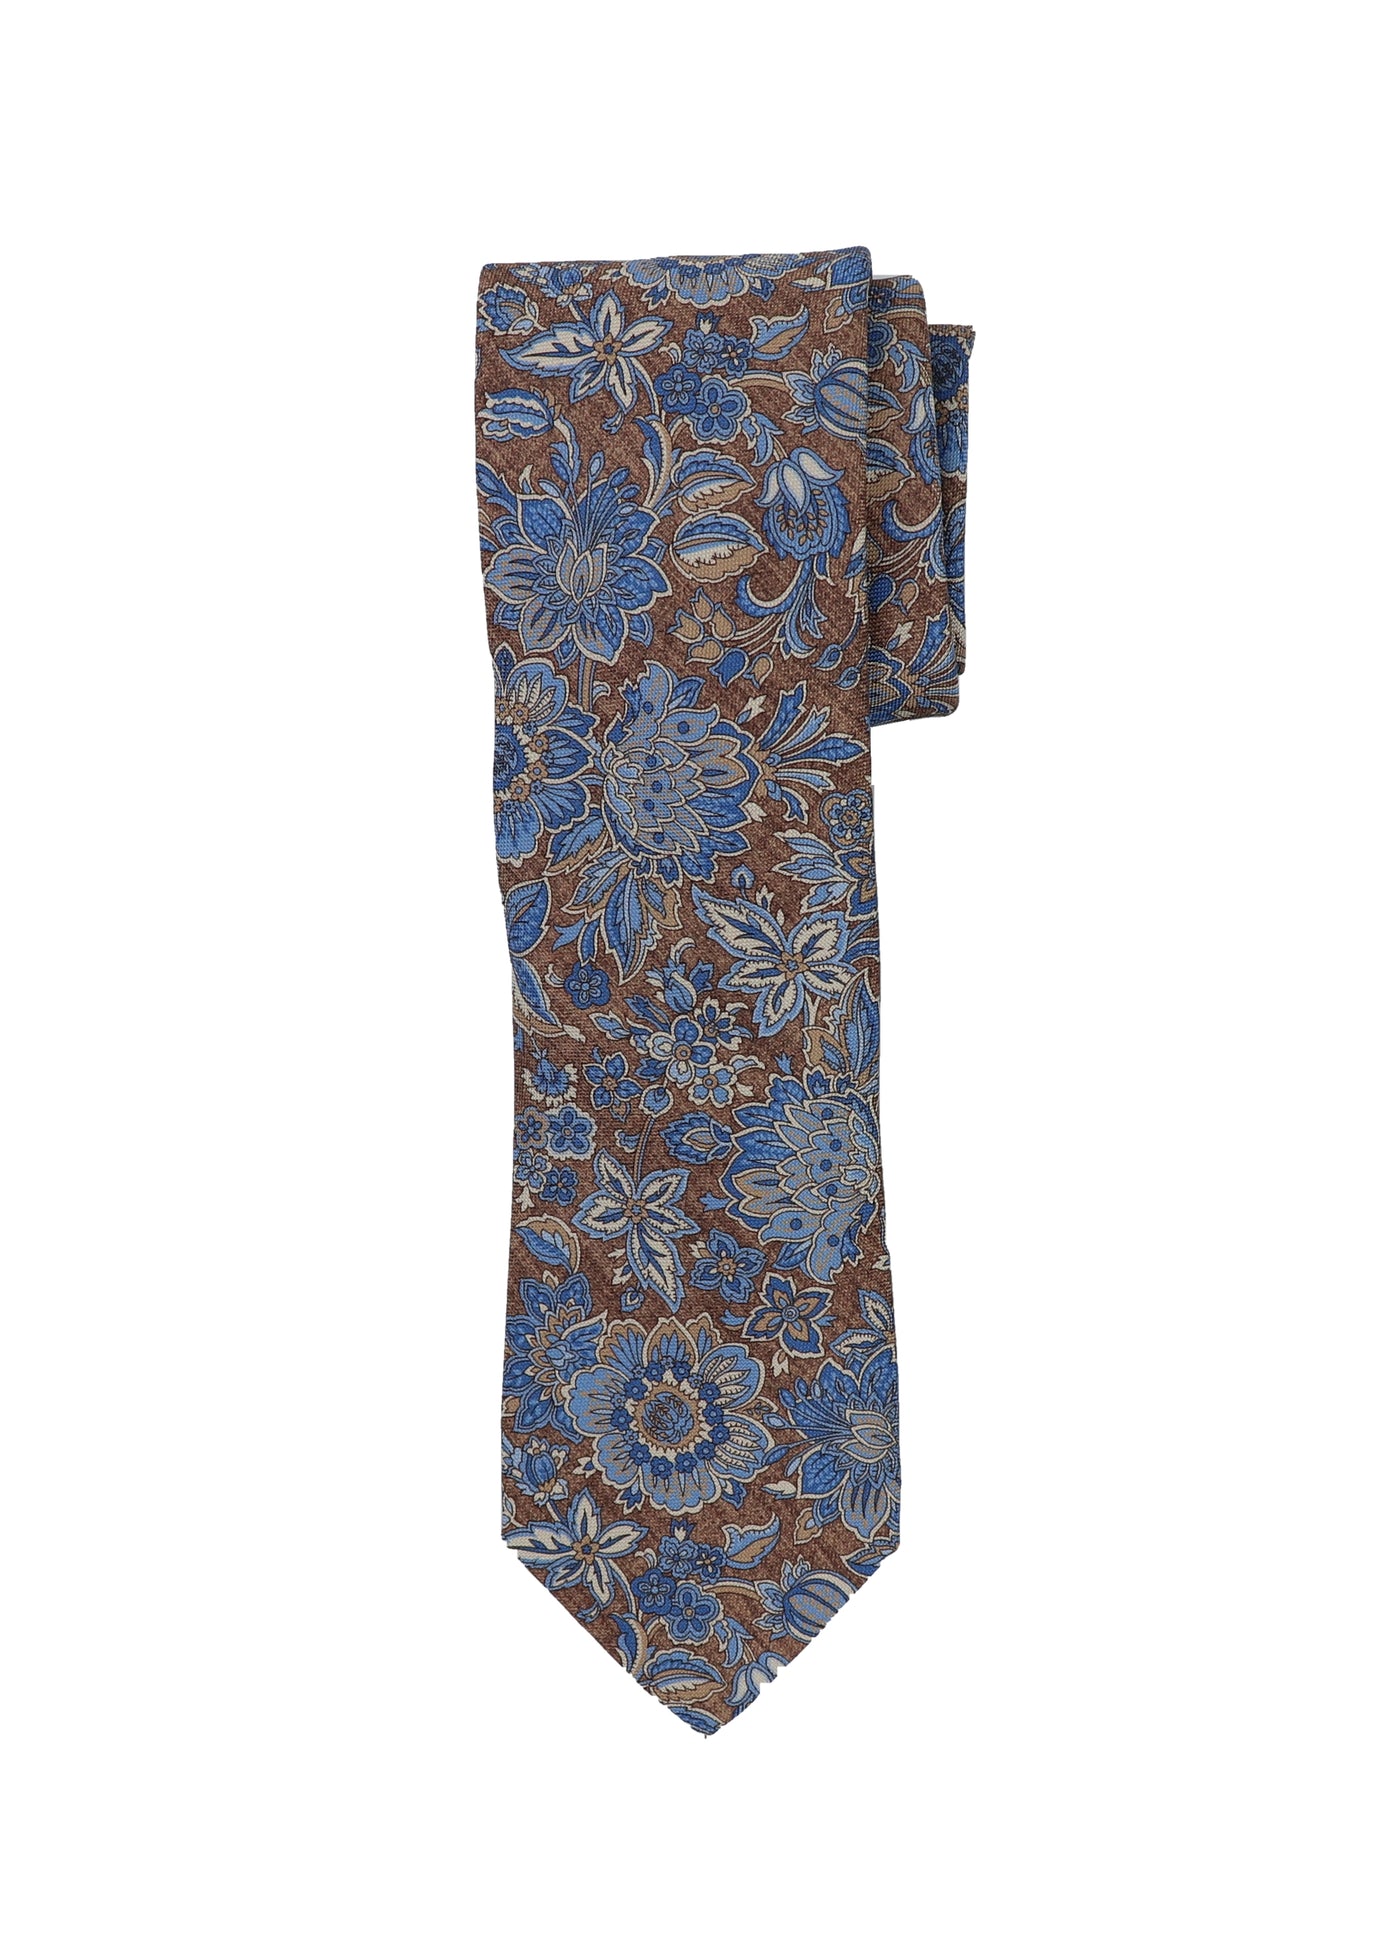 Large Floral Printed Necktie in Tan